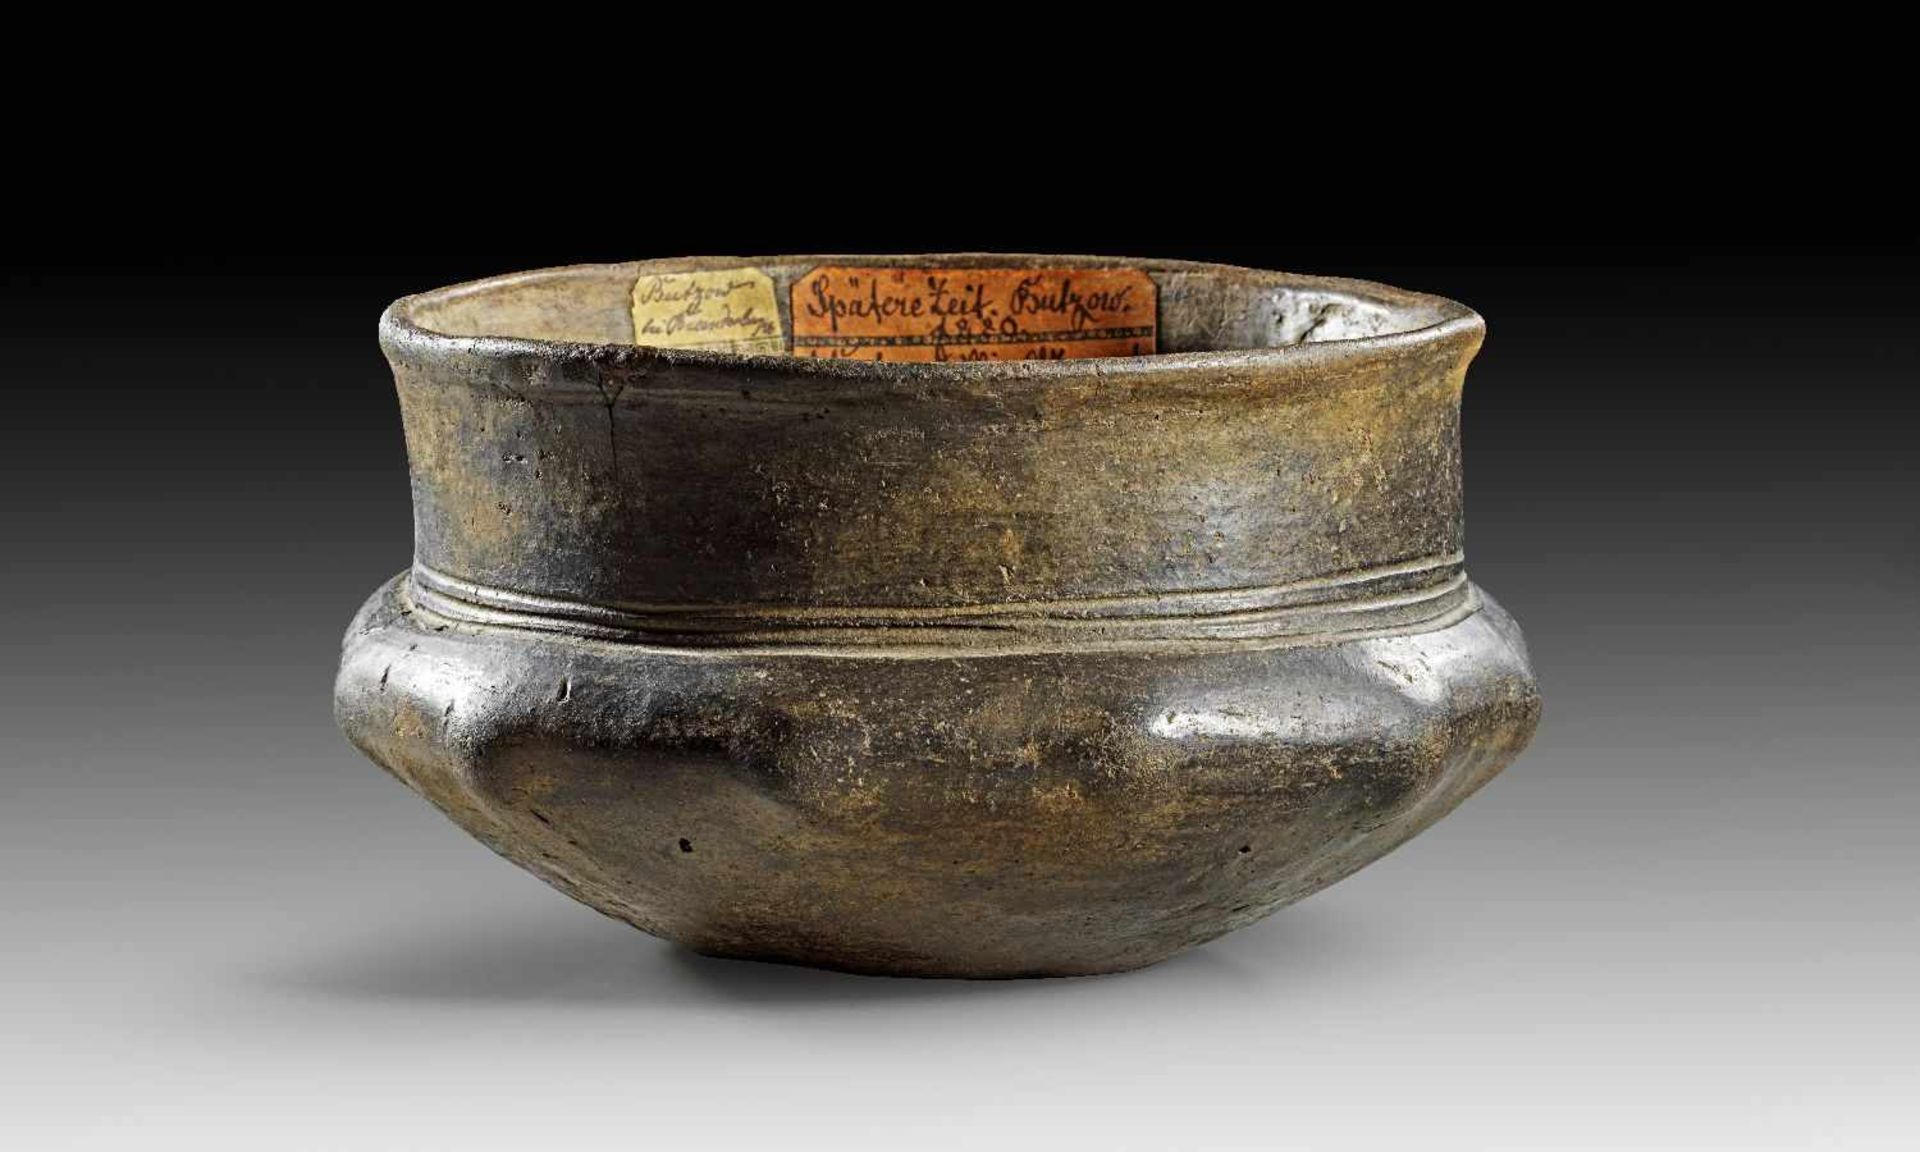 Schale mit Noppen. Hallstatt-Kultur, ca. 800 - 425 v. Chr. H 10,8cm, ø Mündung 17,9cm. Aus braun-